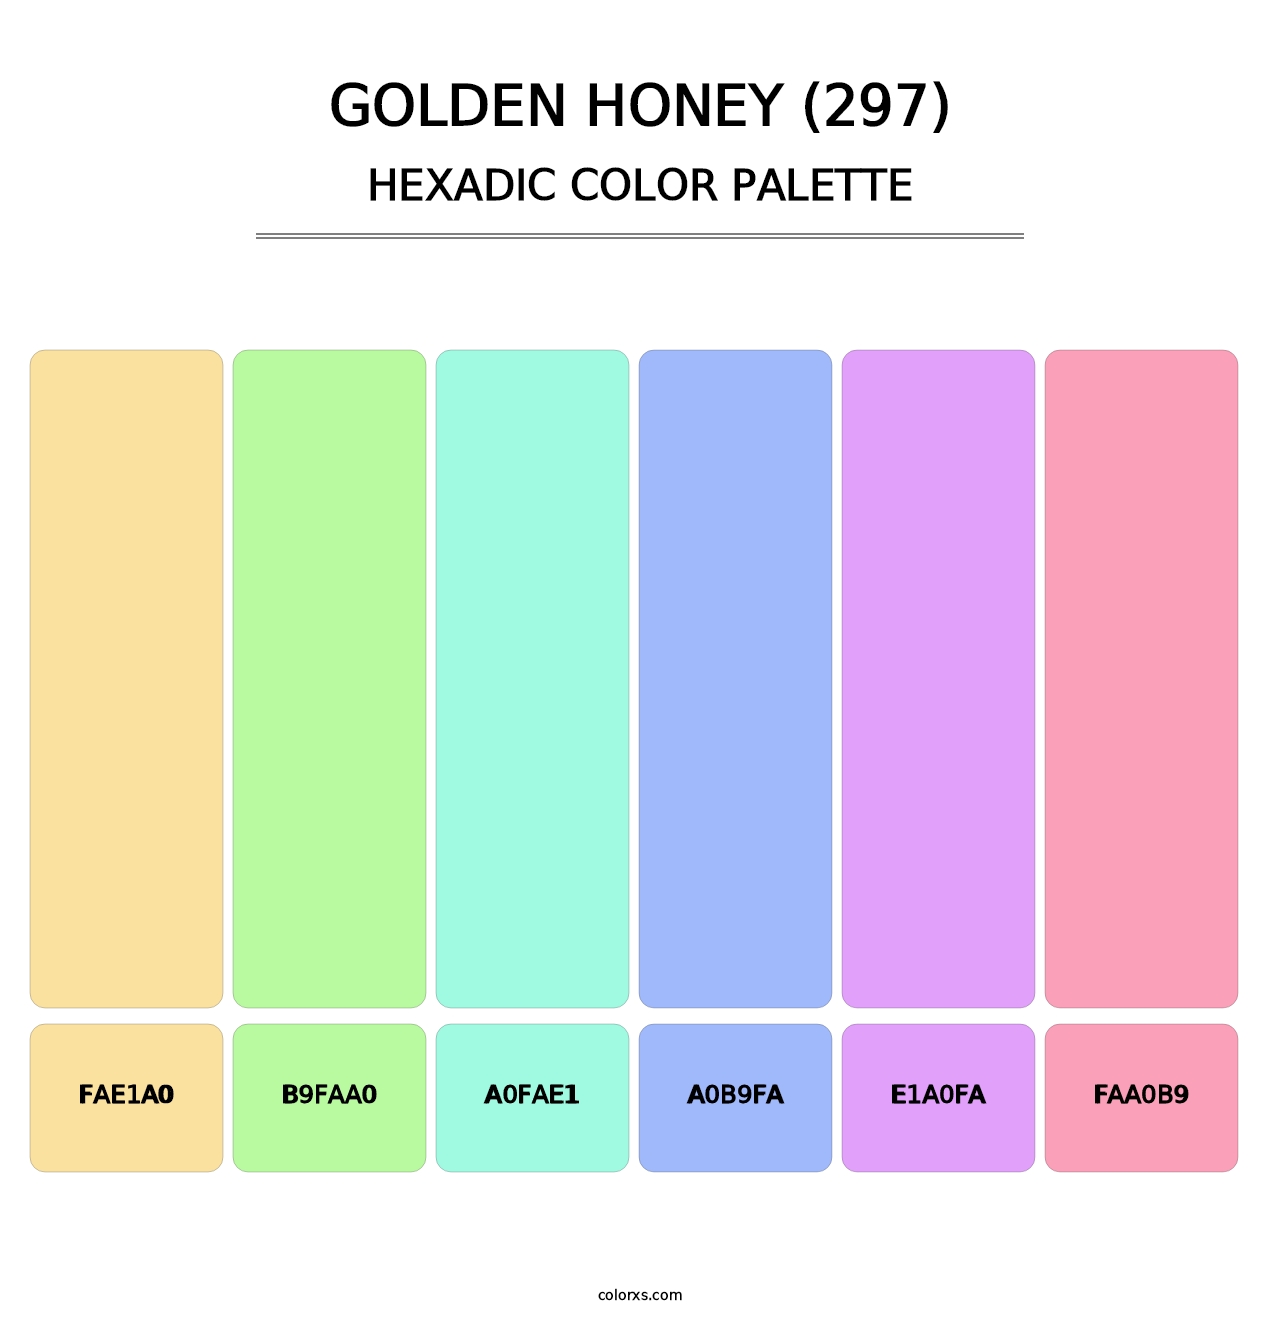 Golden Honey (297) - Hexadic Color Palette